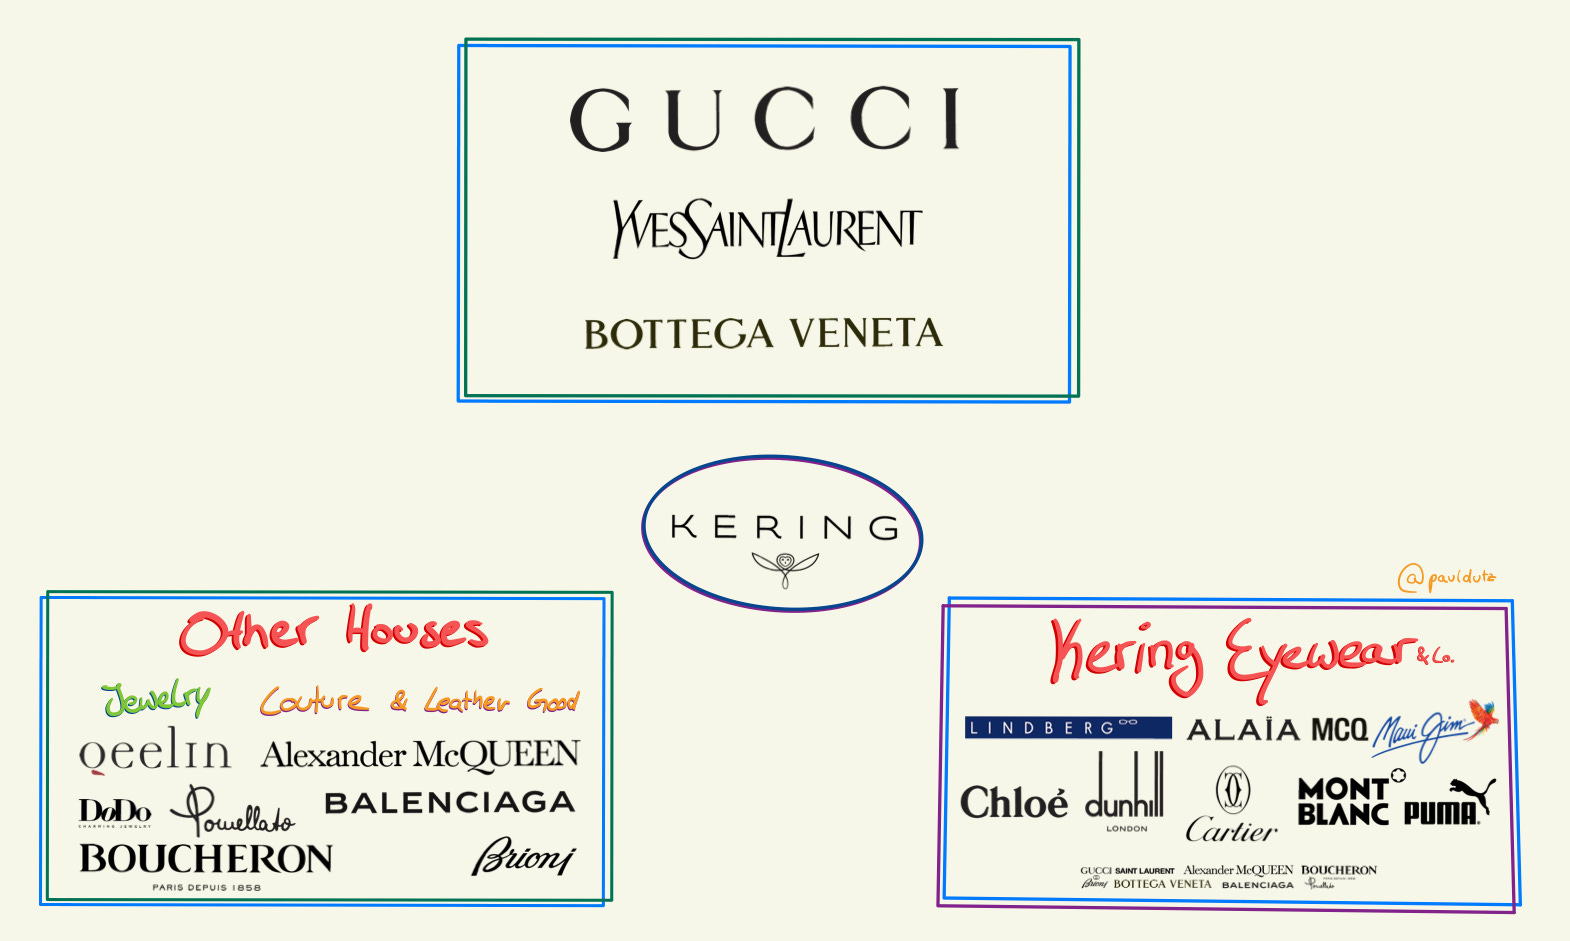 Kering's luxury brands